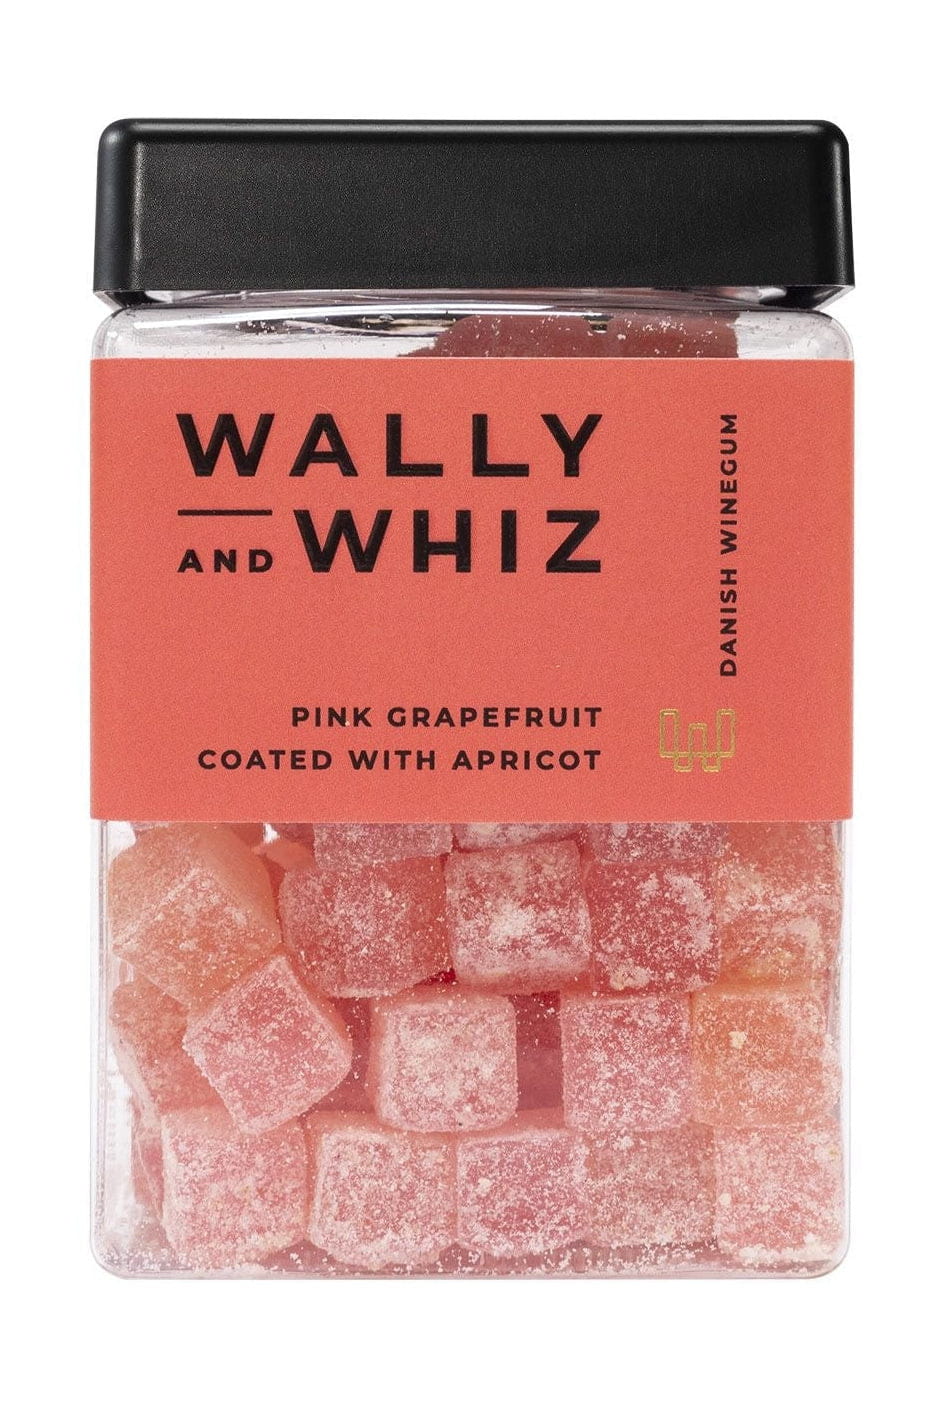 Wally and Whiz Vingummi Cube Pink Grapefrugt Med Abrikos, 240g